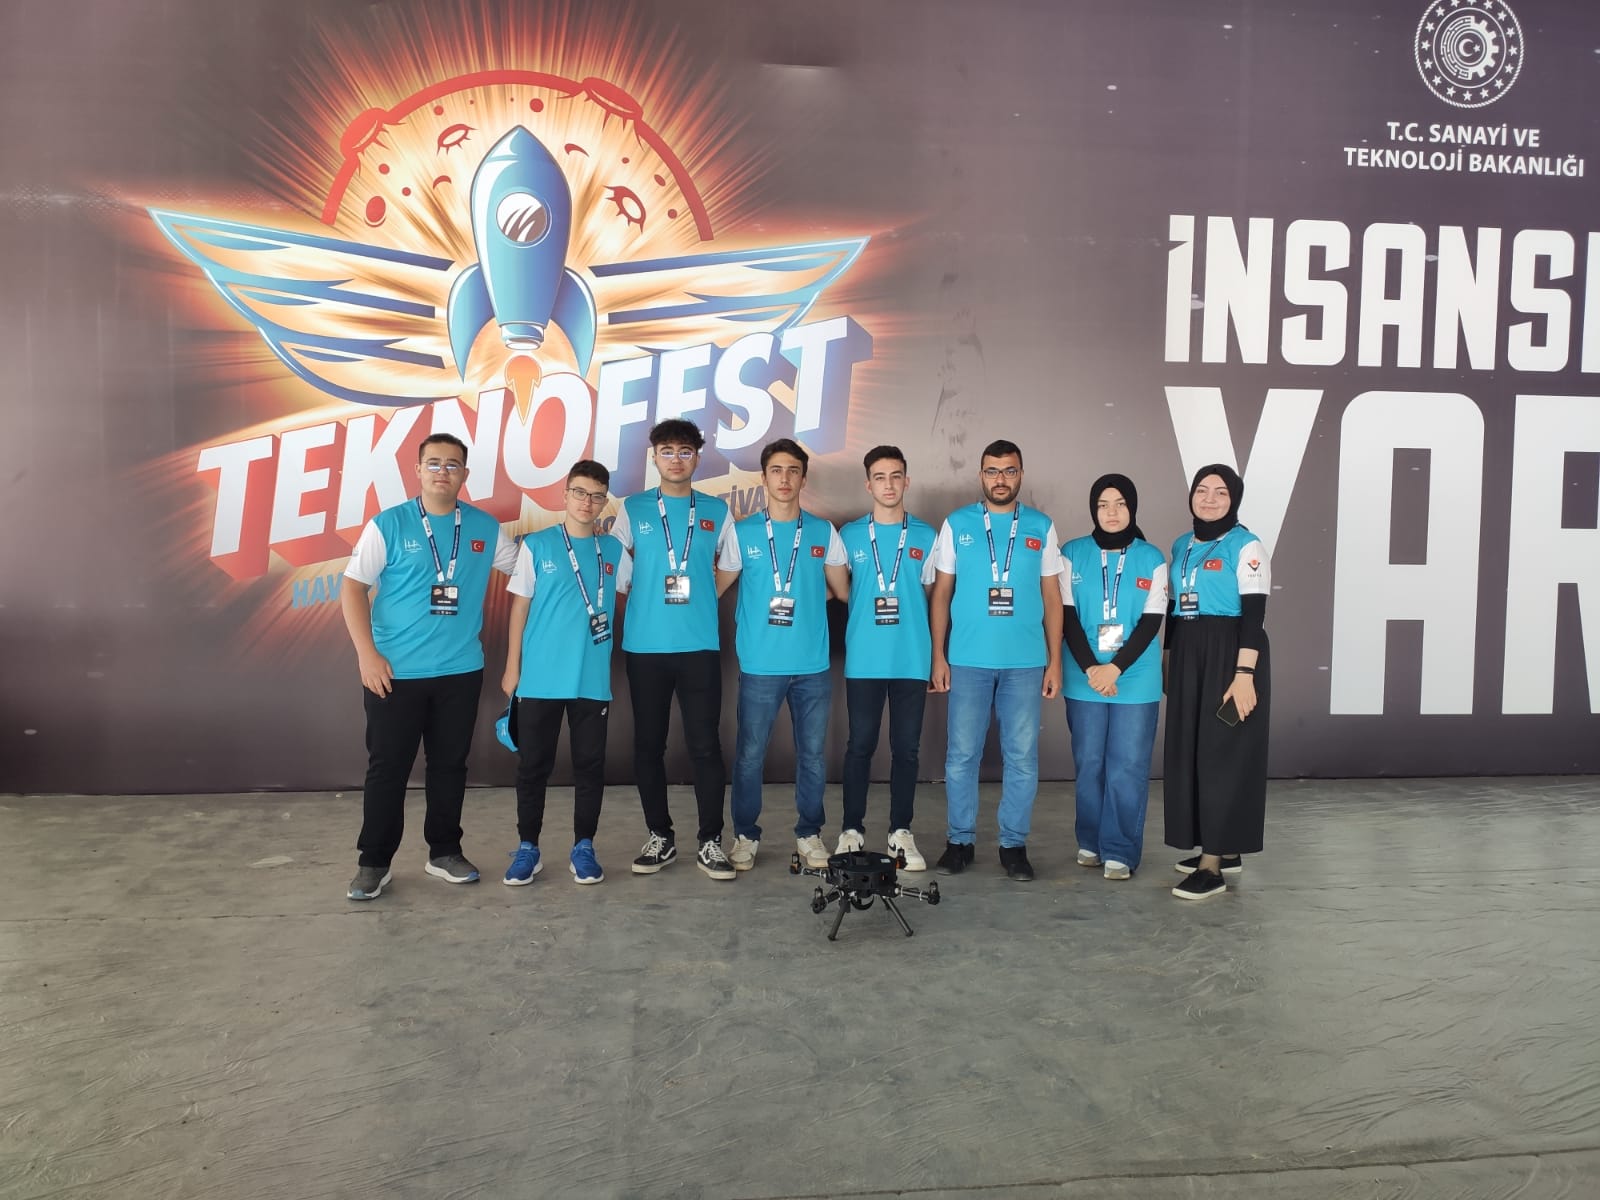 Nevşehir Recep Tayyip Erdoğan Proje Anadolu İHL “Teknofest” Finallerinde